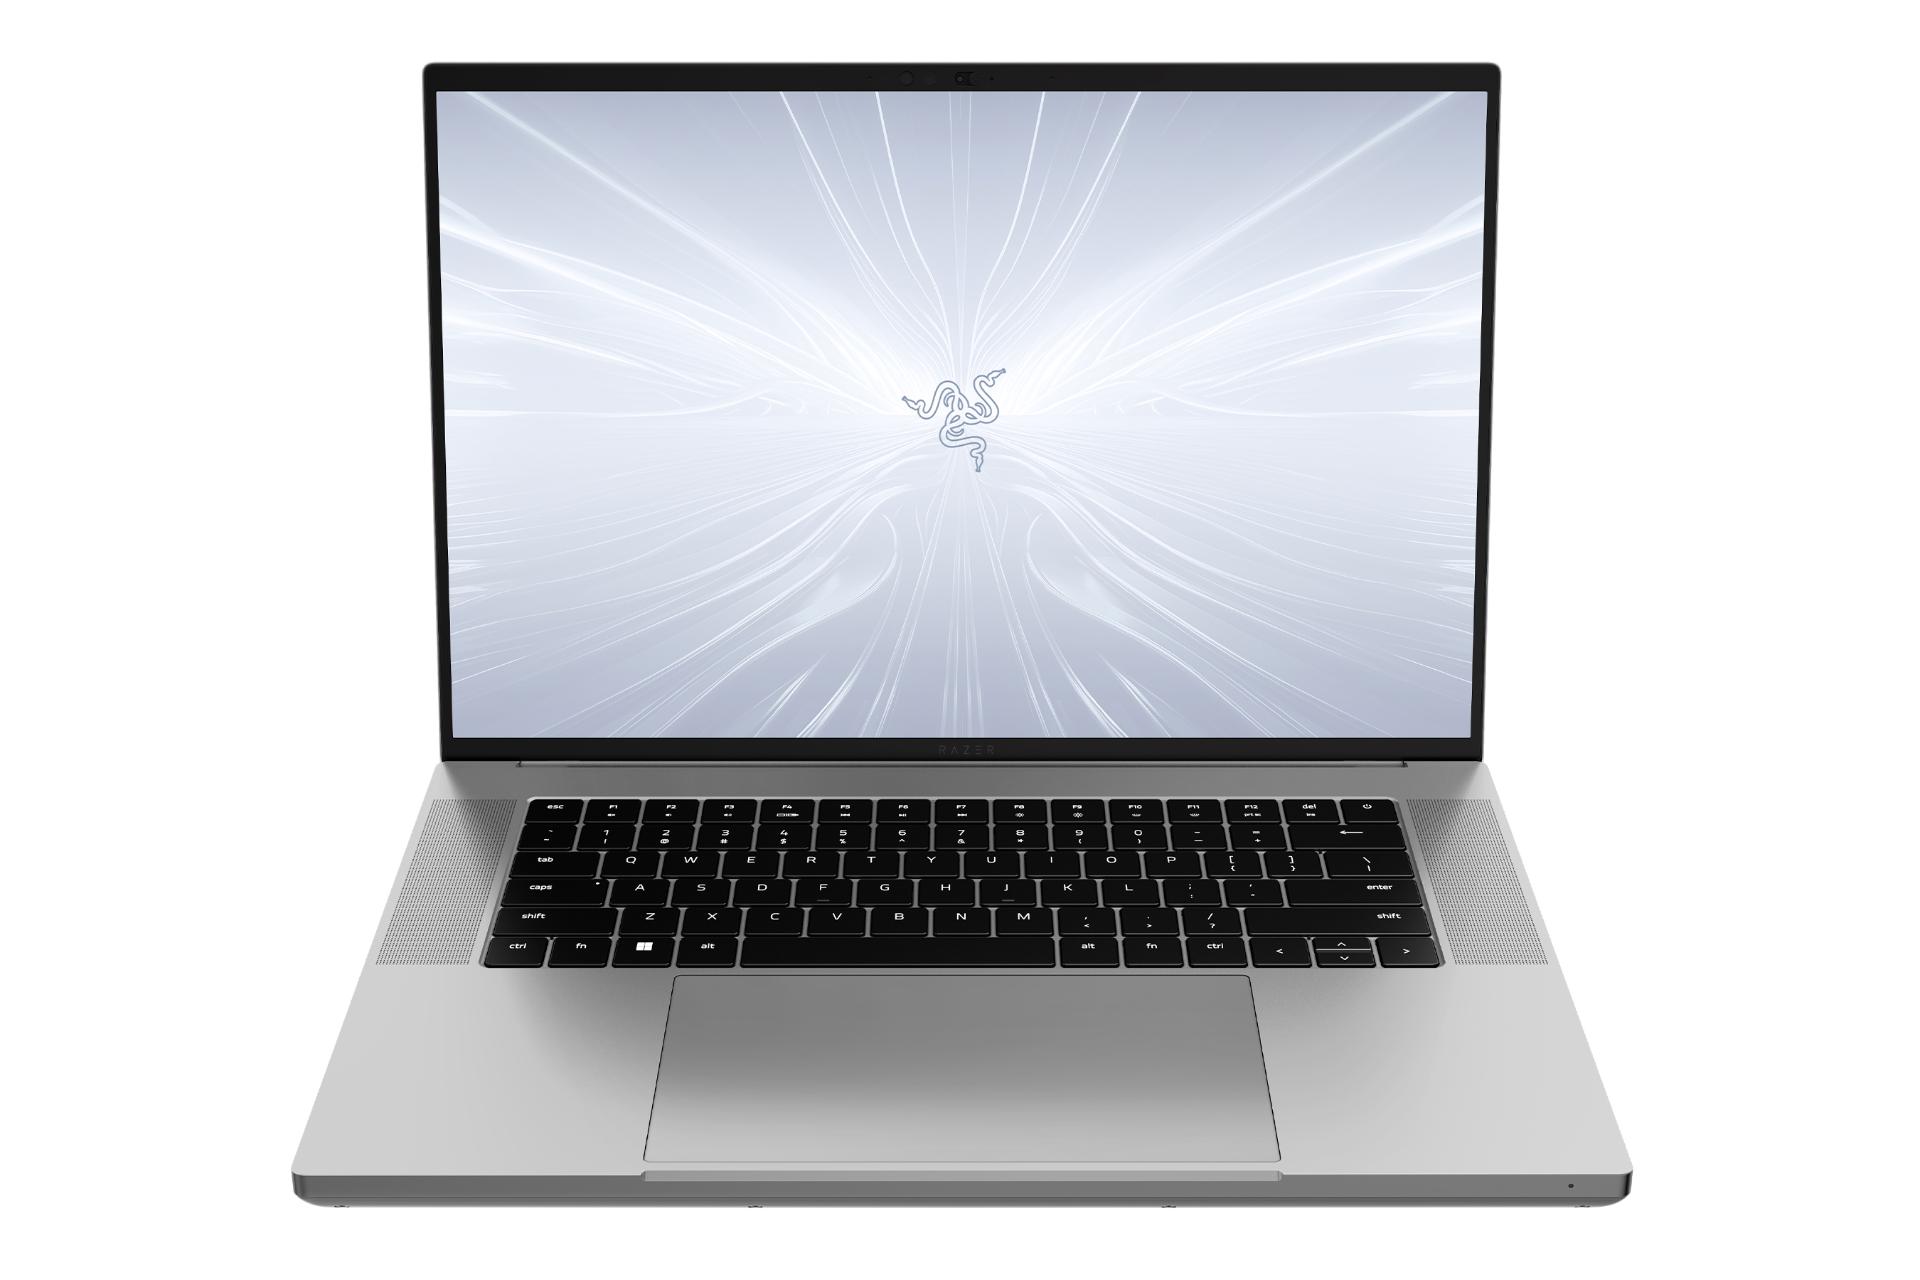 نمای جلوی لپ تاپ بلید 16 ریزر با نمایشگر روشن و نمایش کیبورد رنگ خاکستری